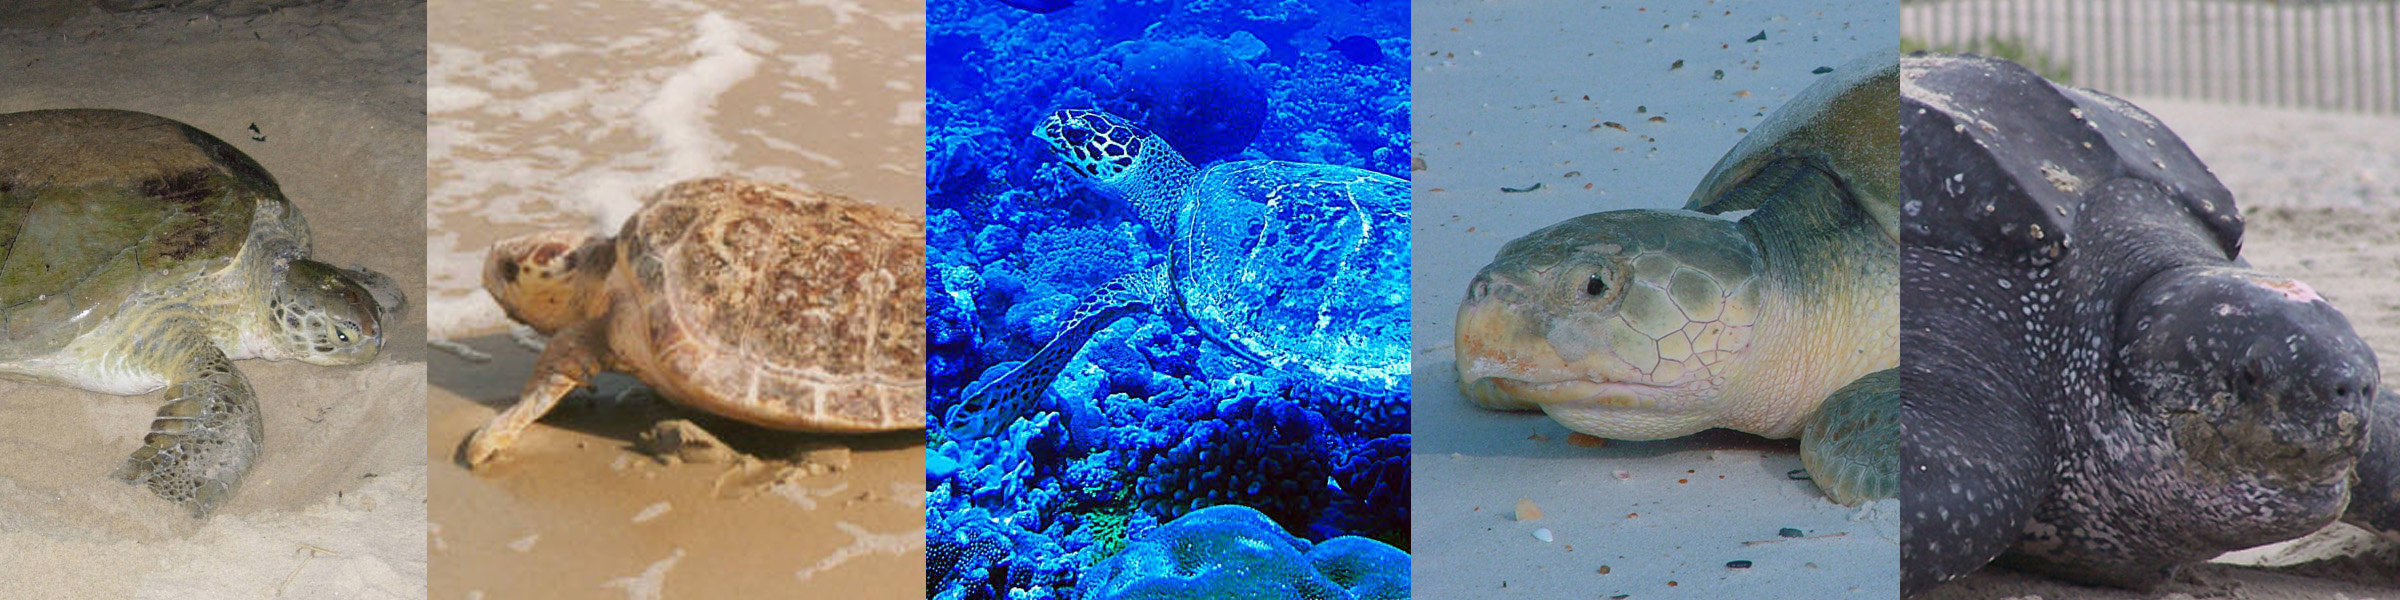 Hawksbill Turtle, Sea Turtles, Species